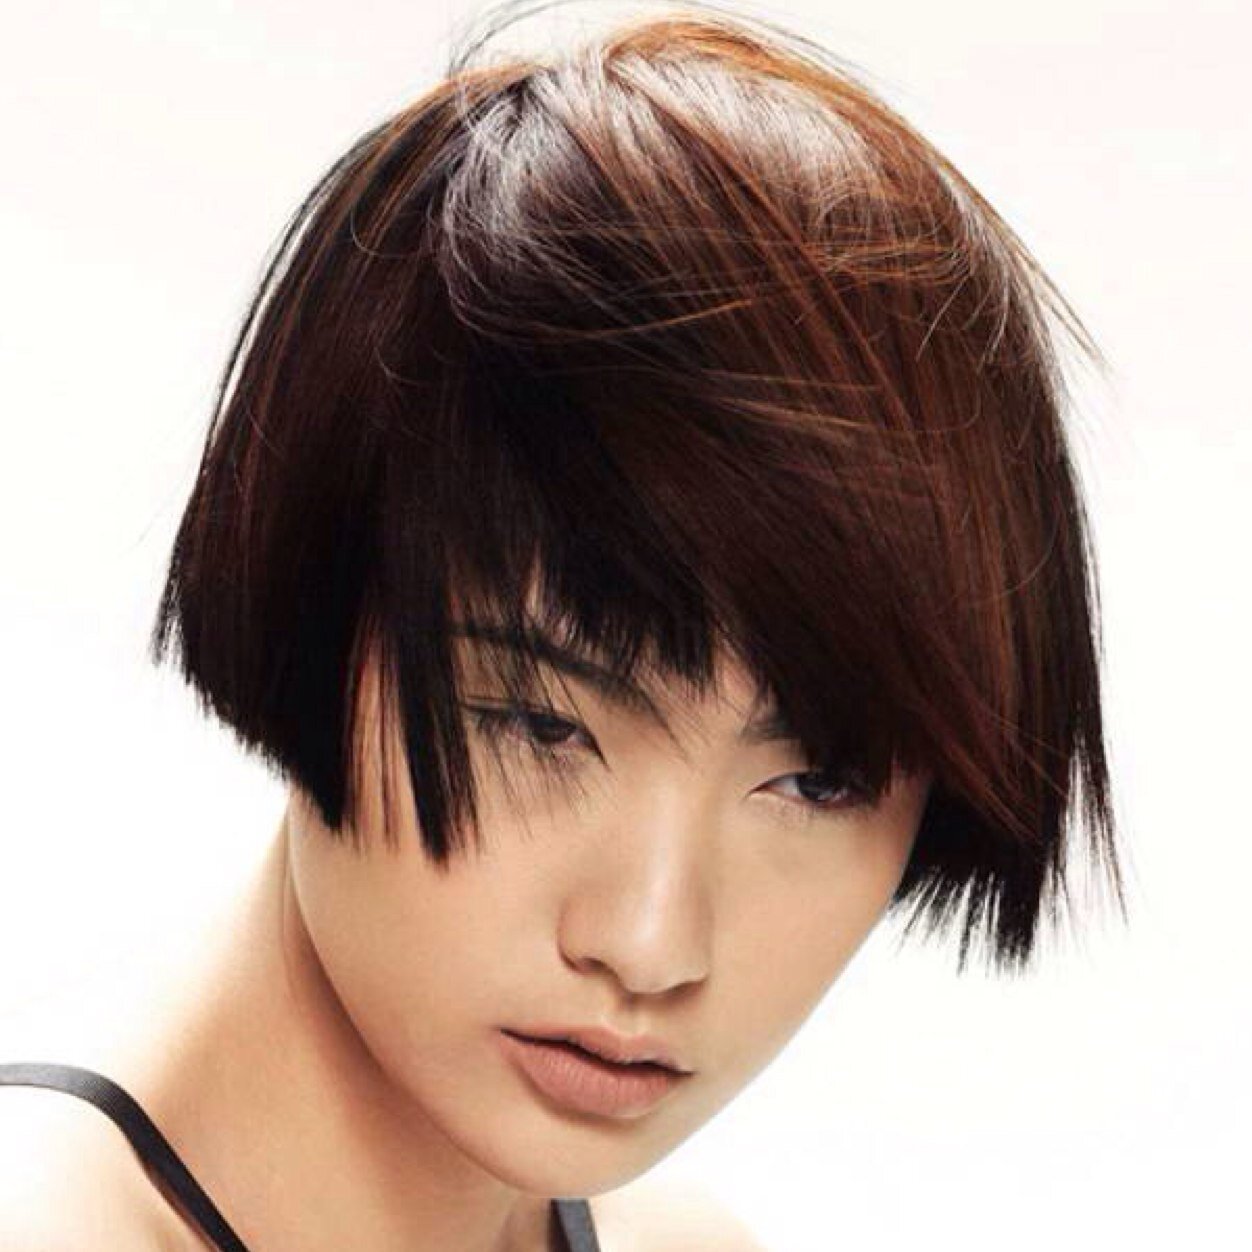 азиатка короткие волосы фото фото 104